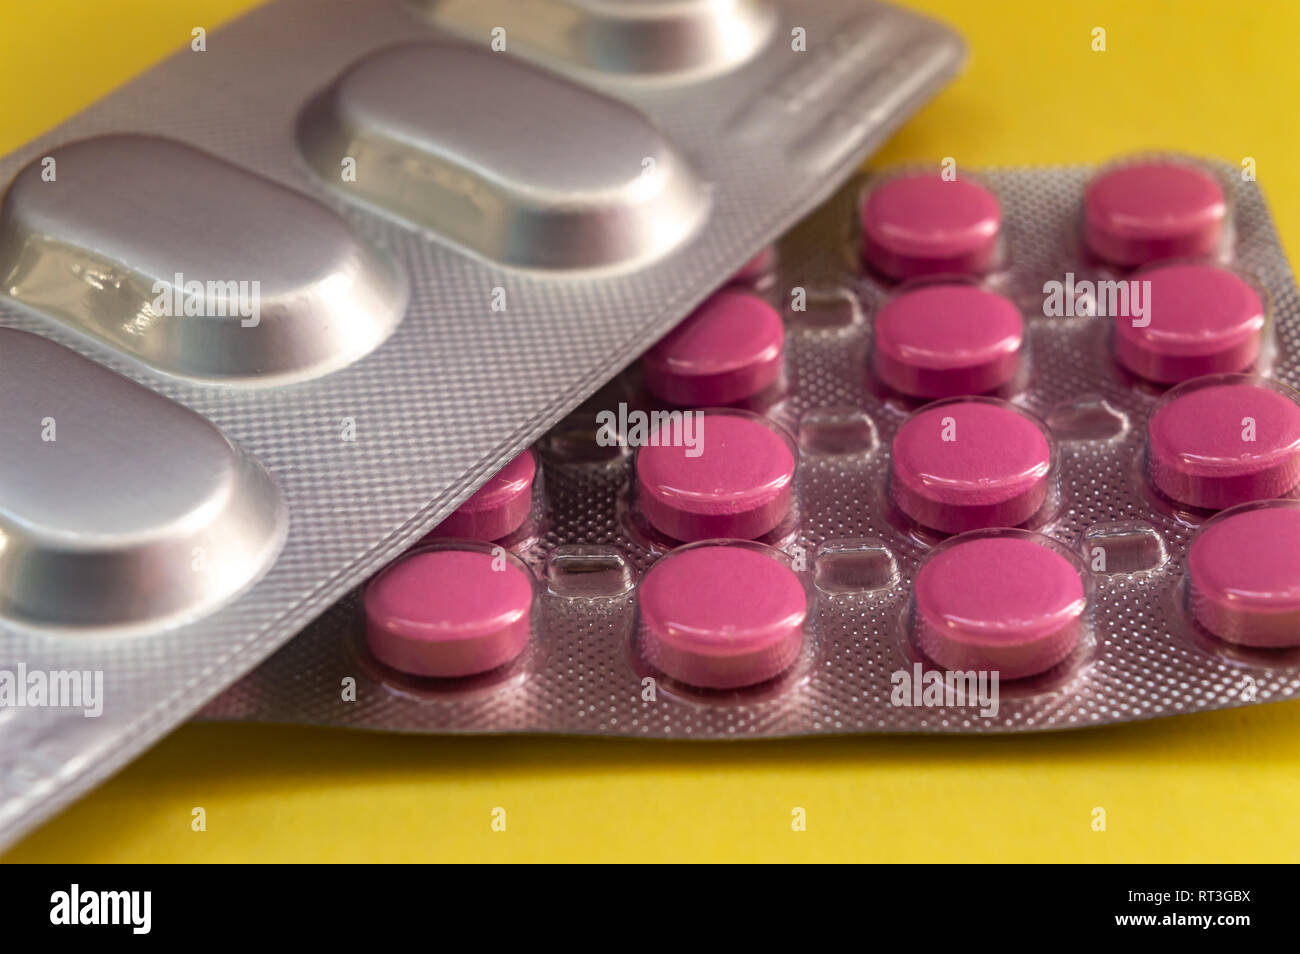 Rote runde Tabletten, ovale Tabletten auf gelbem Hintergrund  Stockfotografie - Alamy